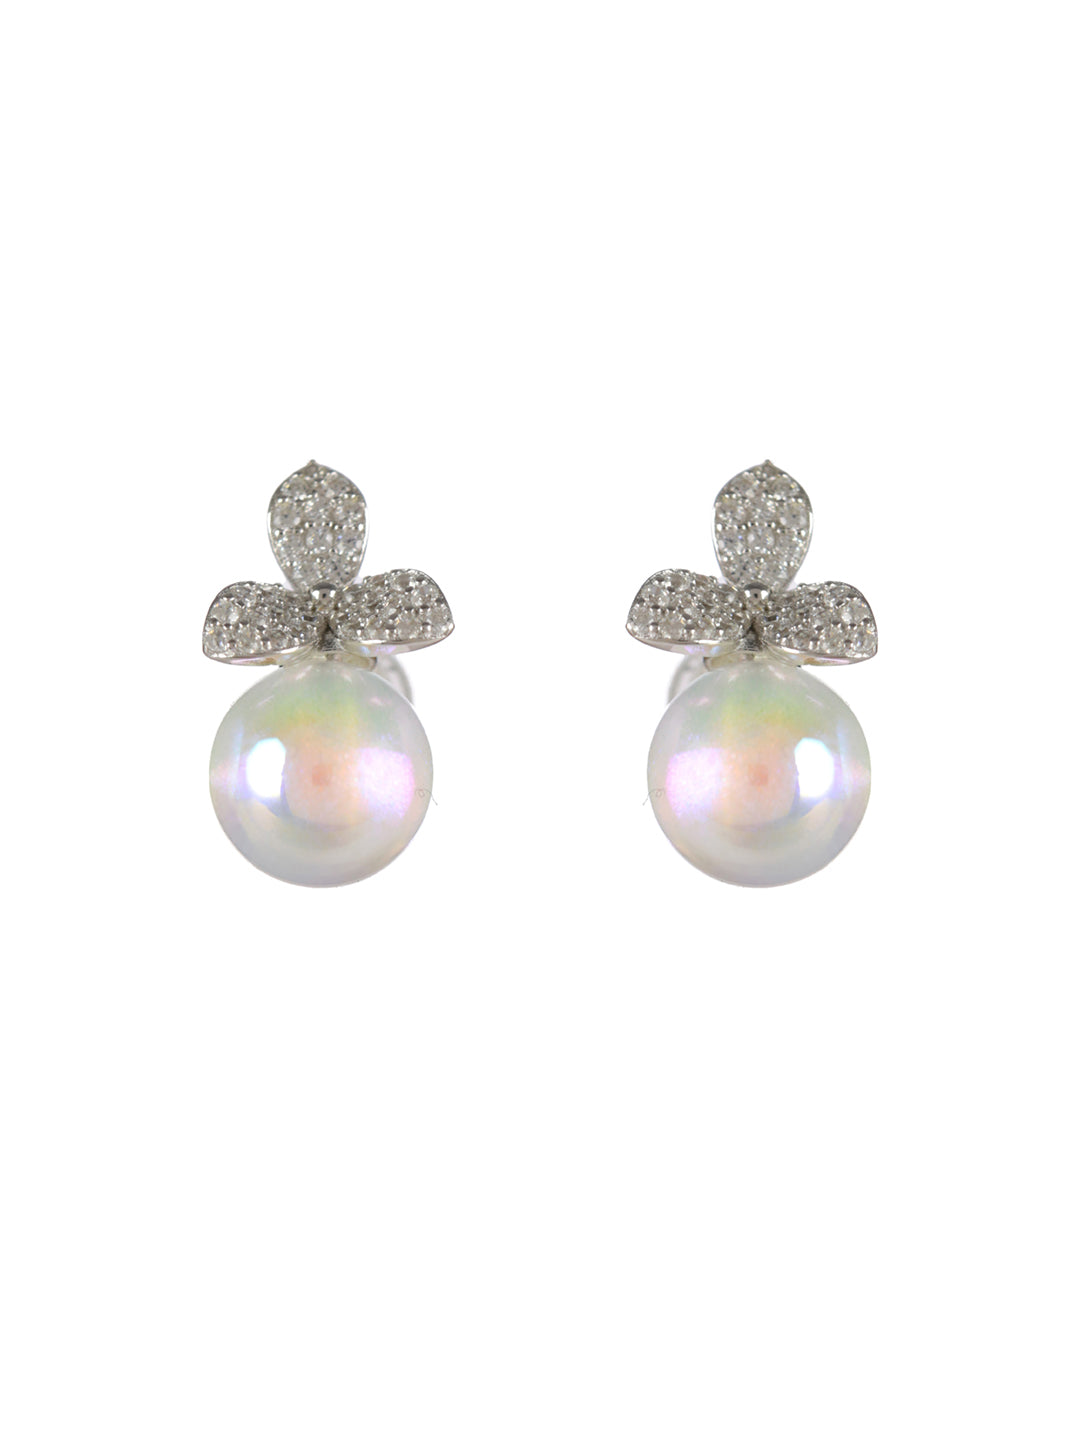 Sheer by Priyaasi Pearl American Diamond Sterling Silver Earrings